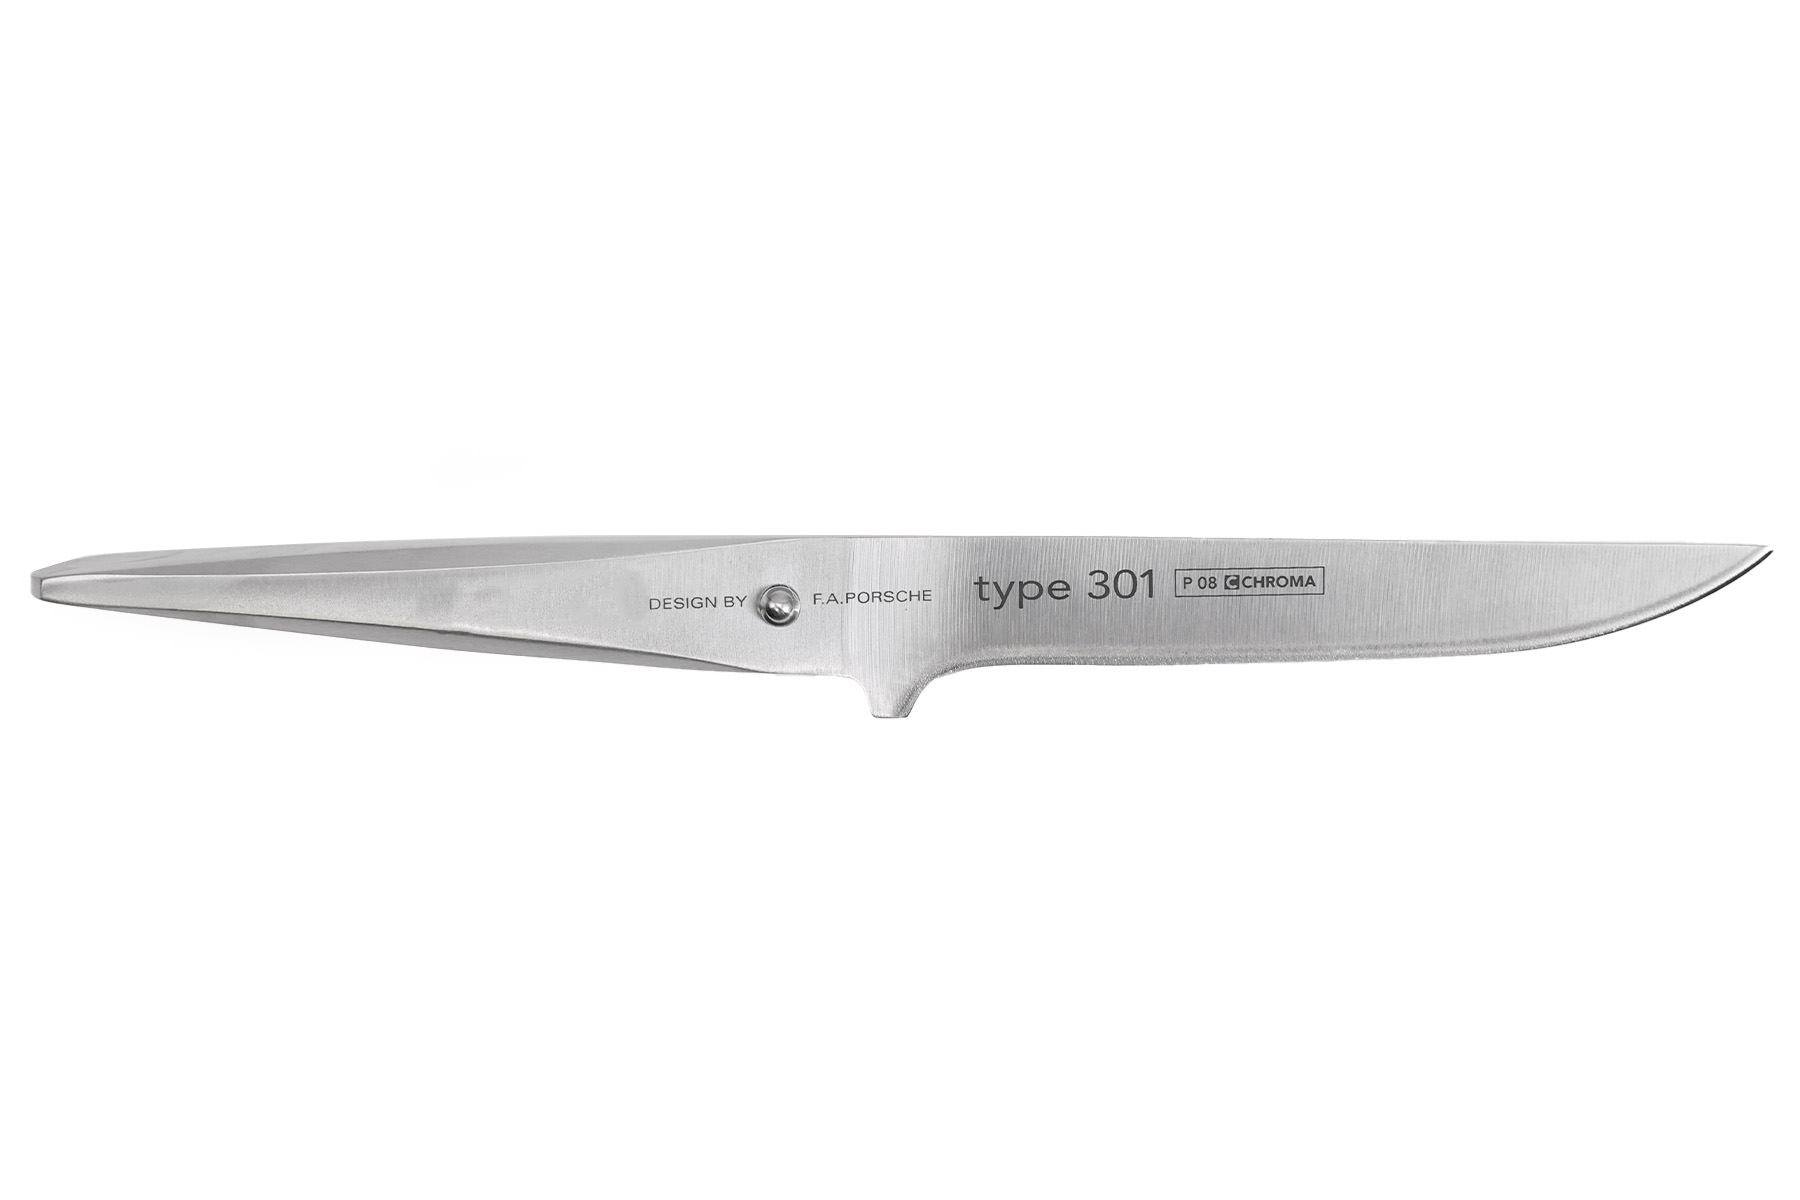 Couteau japonais Type 301 design by F.A. Porsche - Couteau désosseur 14 cm